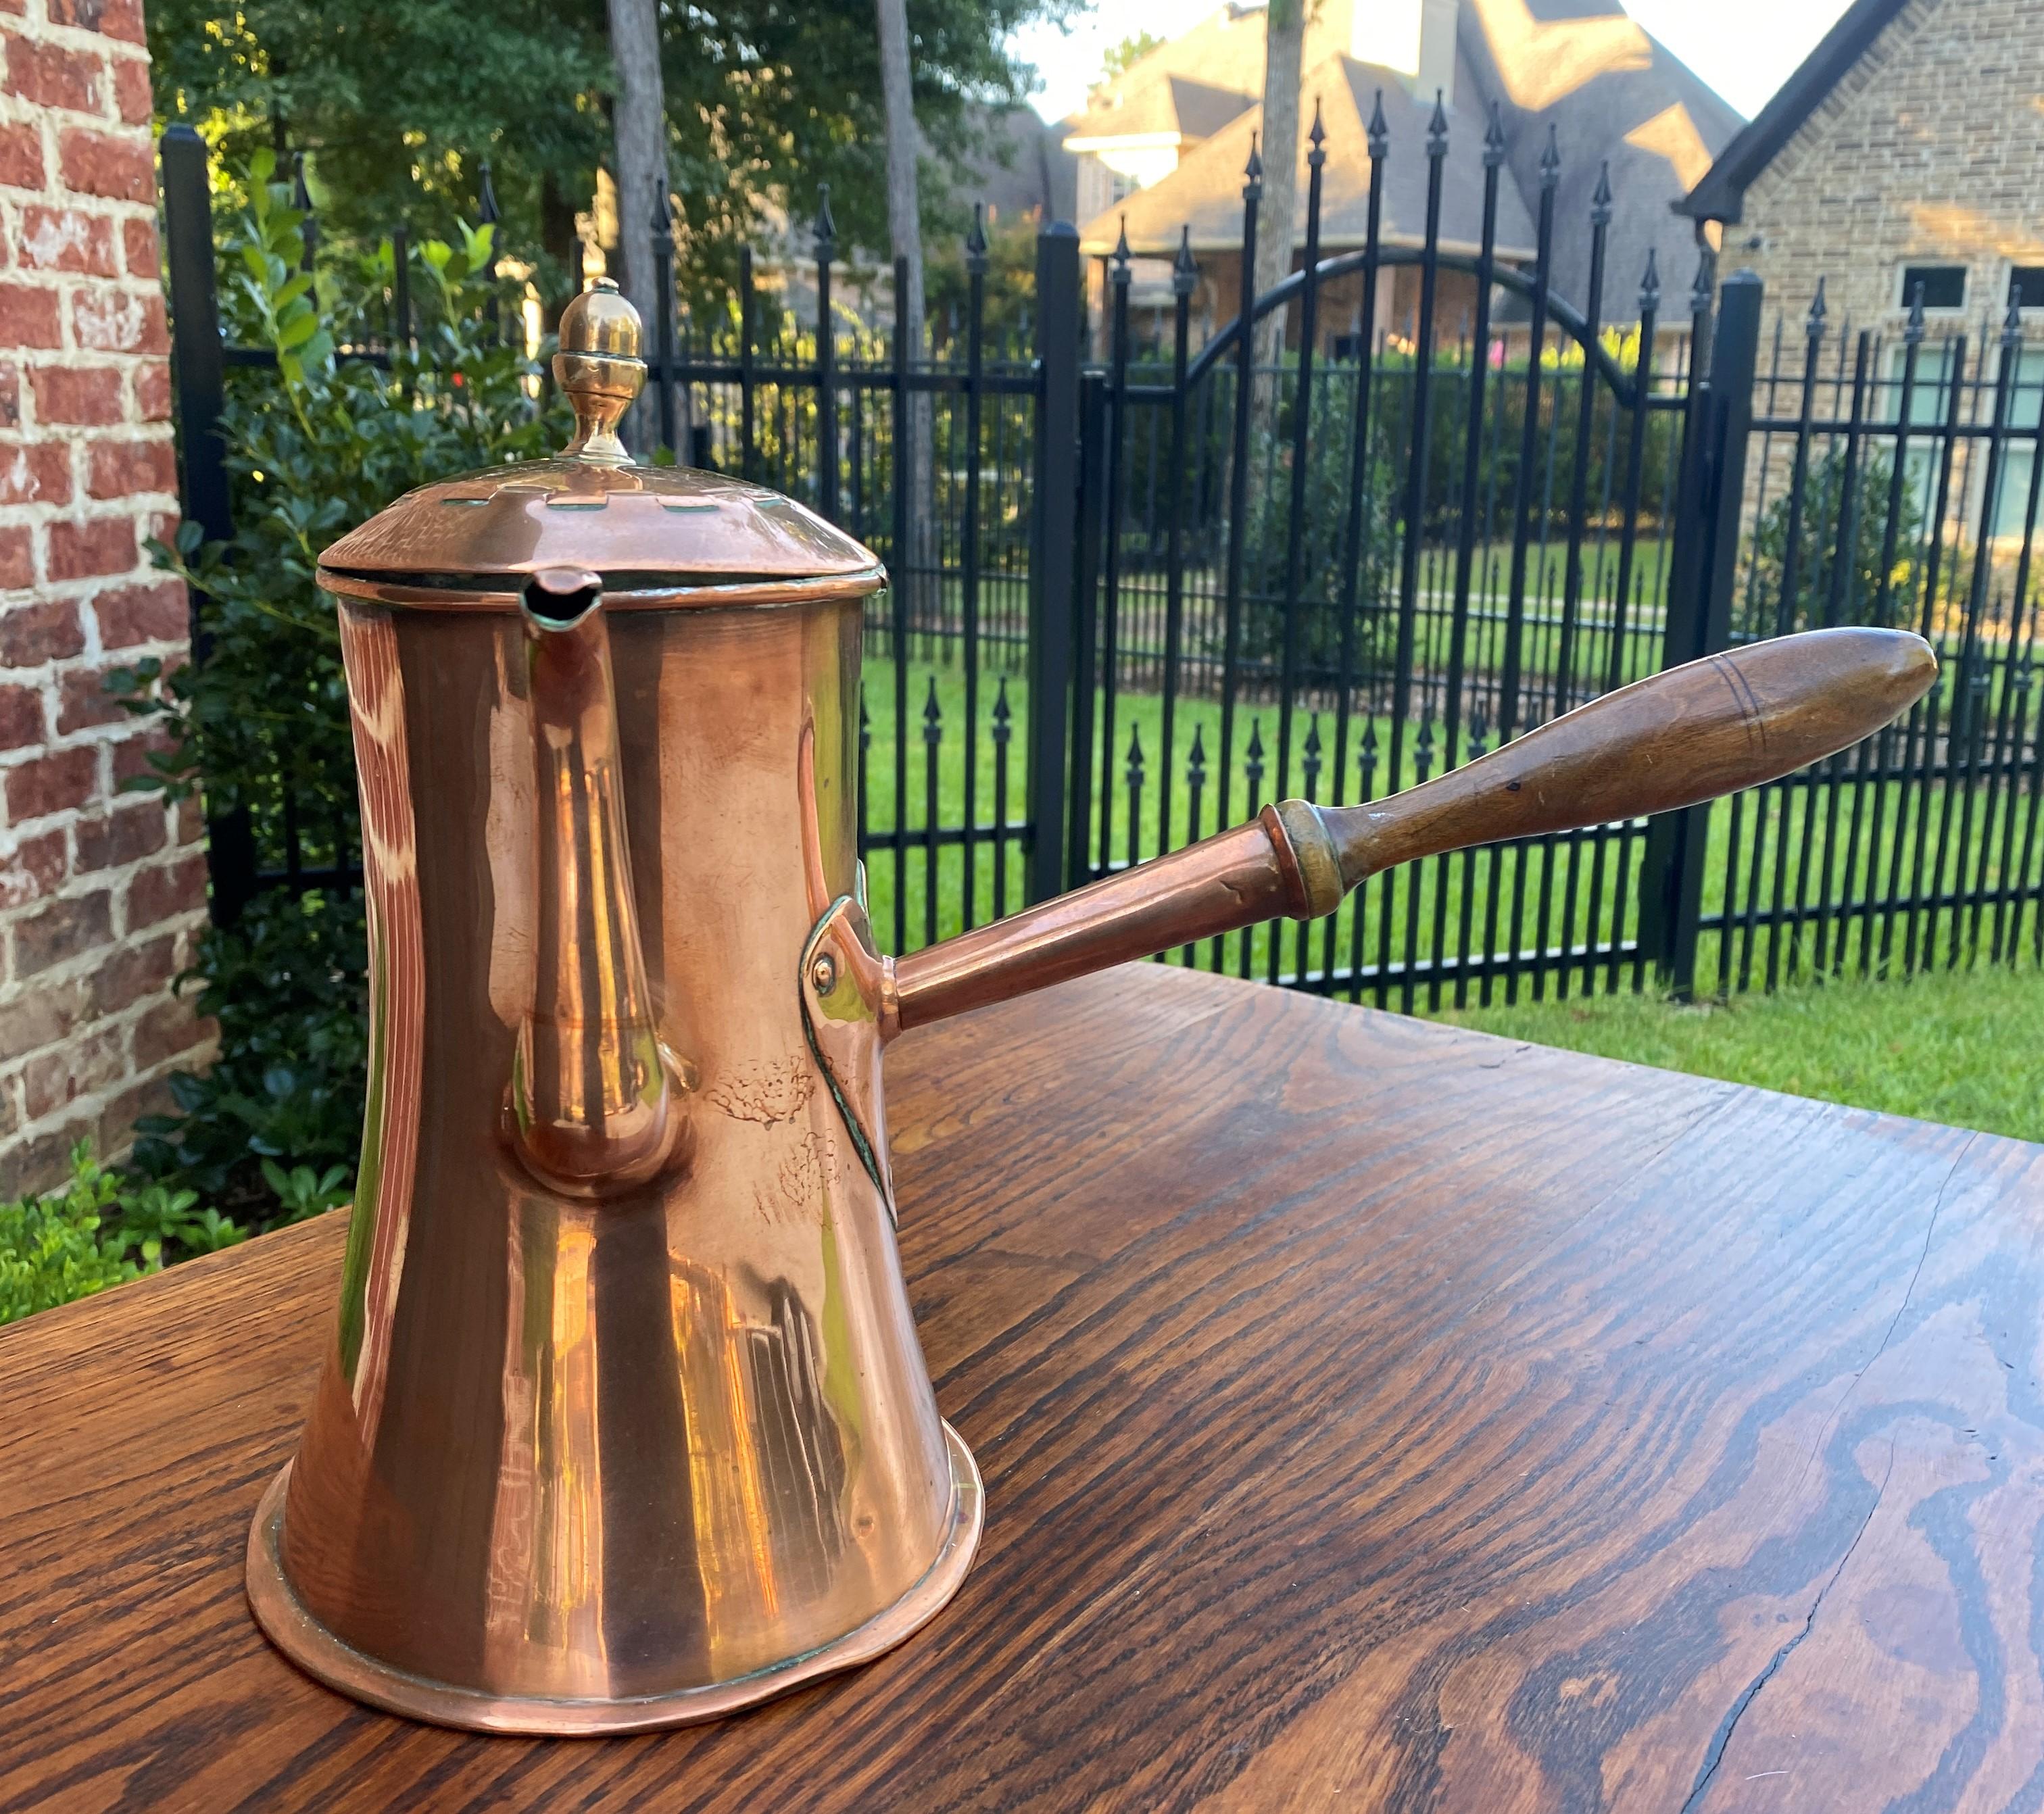 Antique English Copper Tea Kettle Pitcher Hand Seamed Wood Handle Pour Spout 1